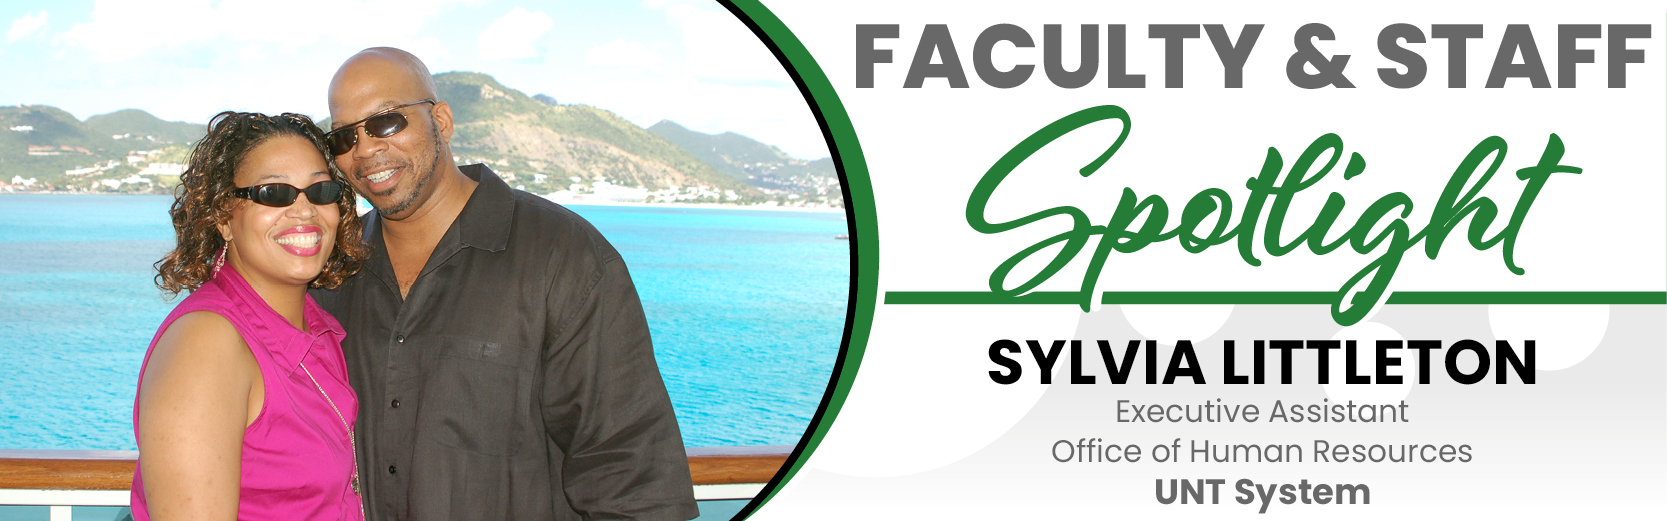 Faculty & Staff Spotlight: Sylvia Littleton, UNT System